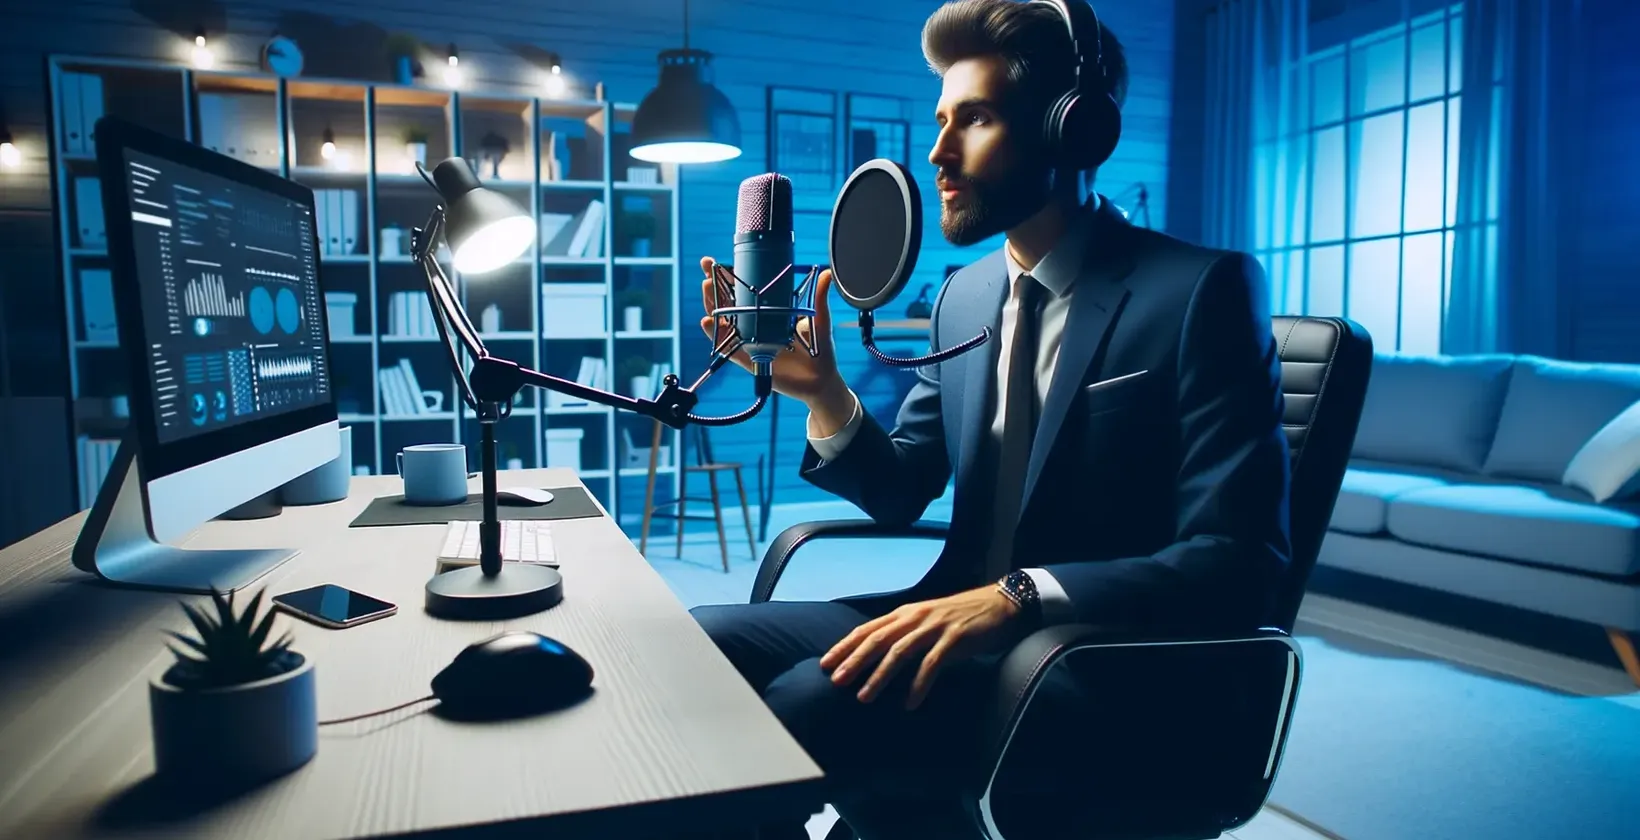 Un homme habillé de façon formelle est assis à un bureau, tenant un microphone, tout en utilisant un convertisseur de parole en texte.